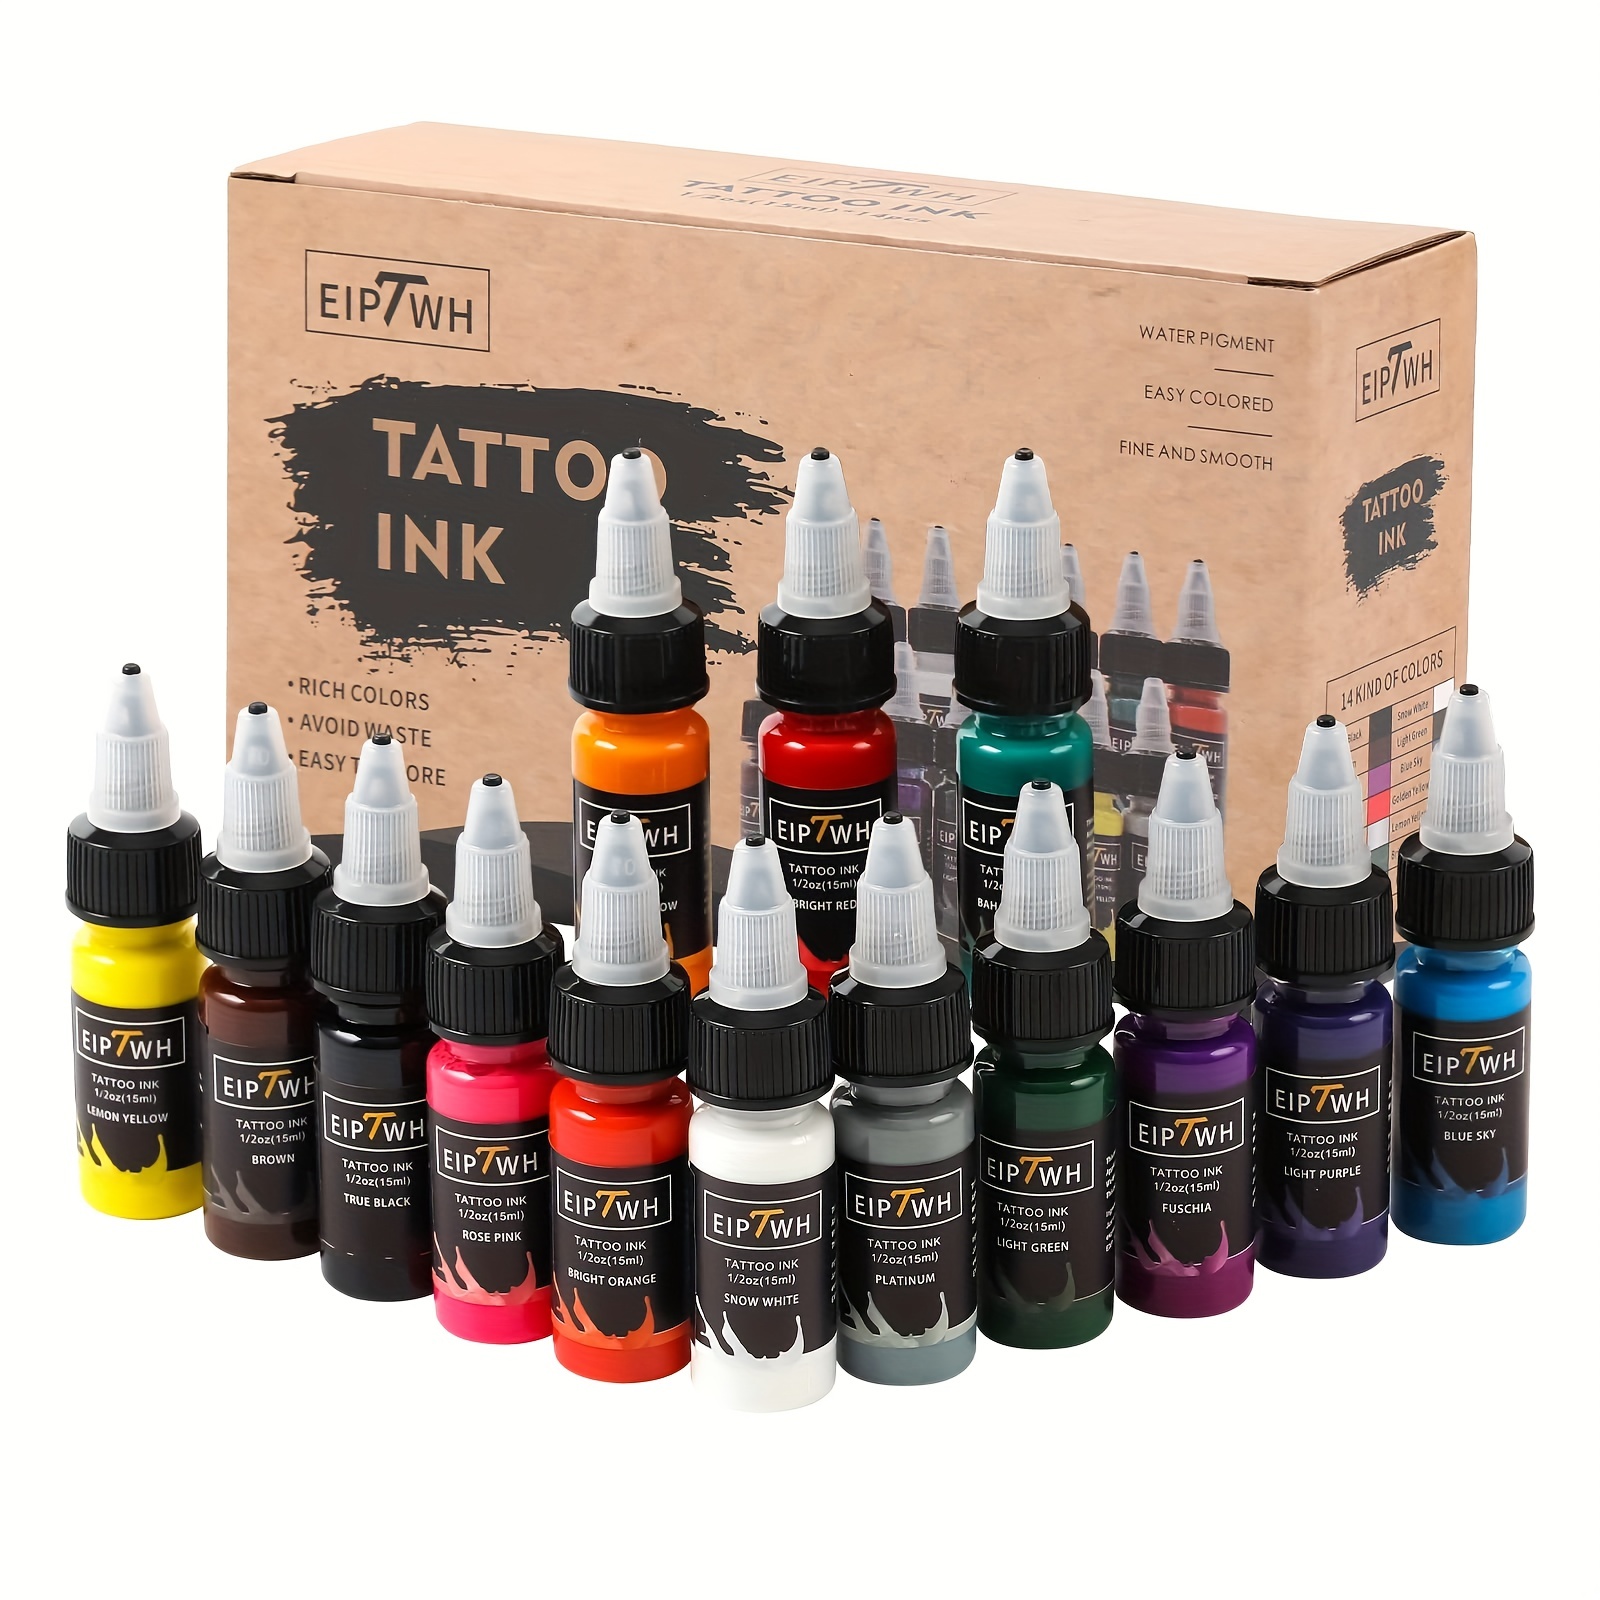 EIPTWH 10 Color Tattoo Inks Set 30ml/ 1oz Tattoo Ink Kit